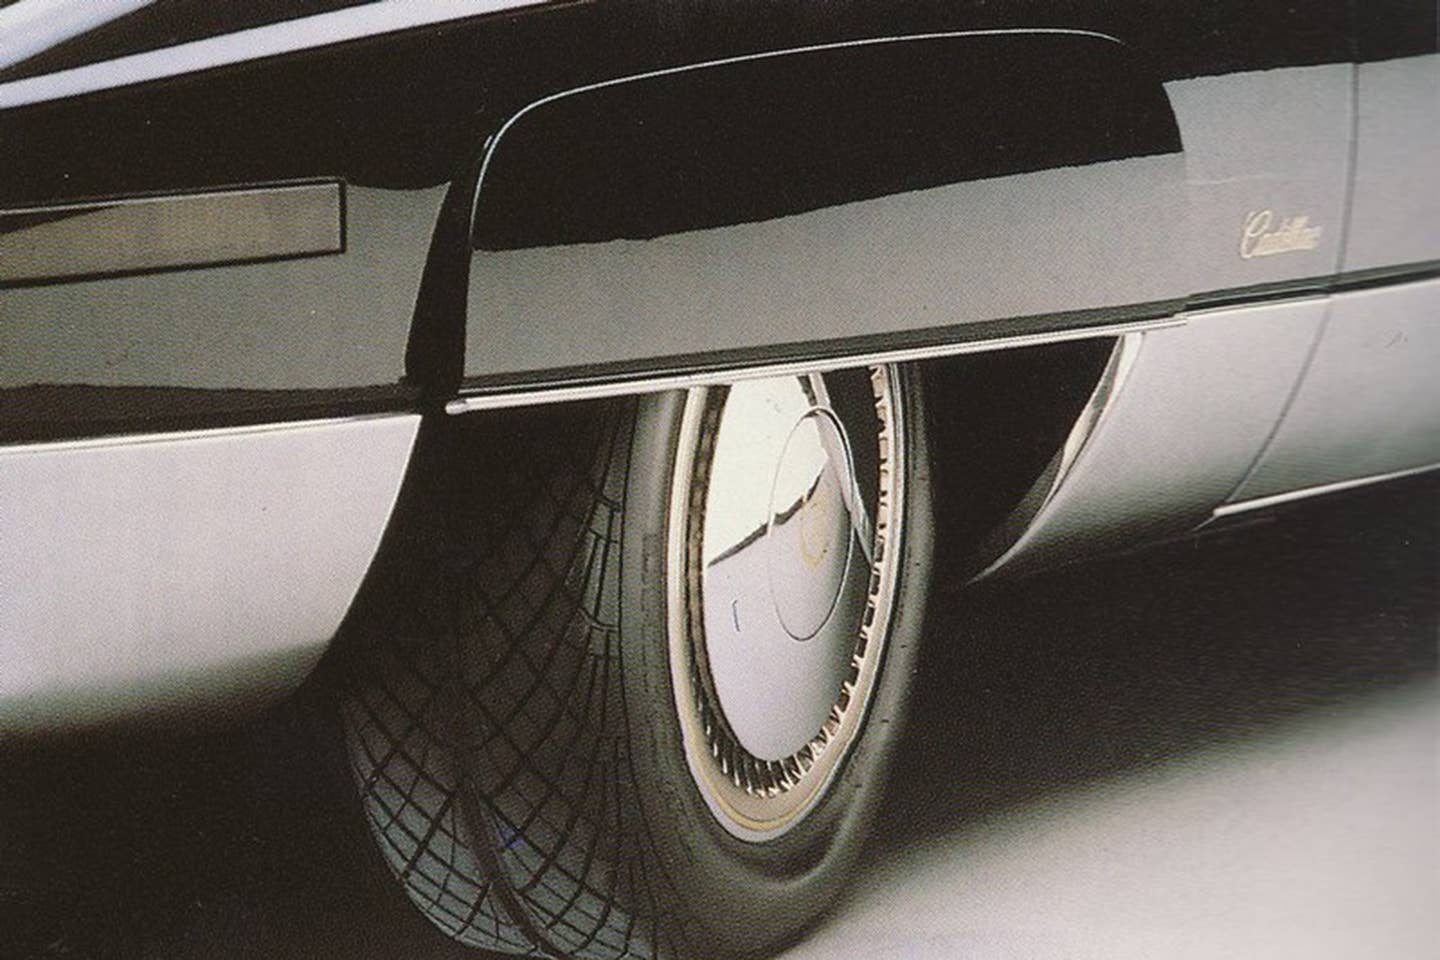 Cadillac Voyage 1988 concept